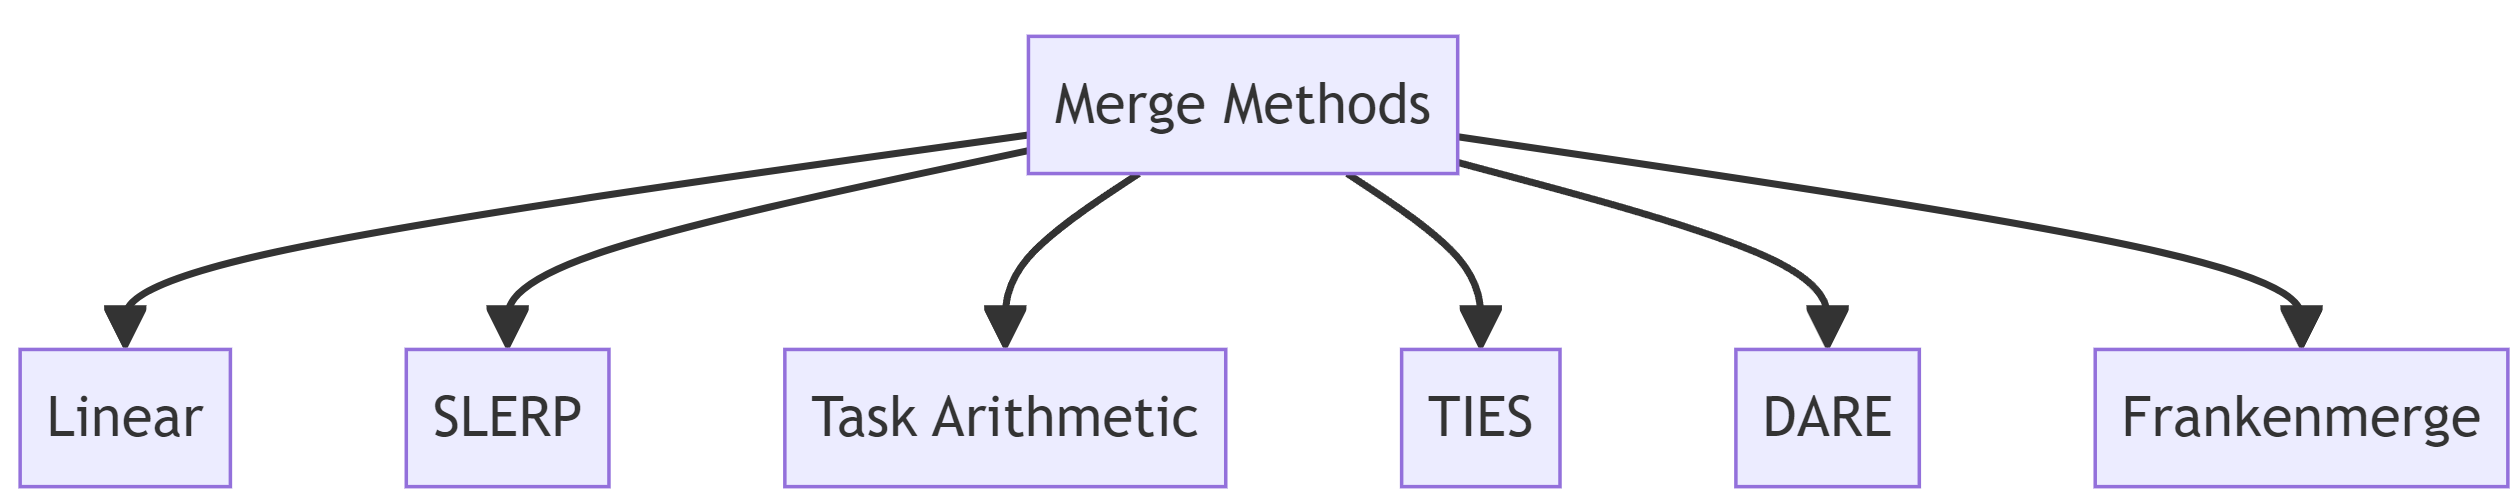 Model Merging